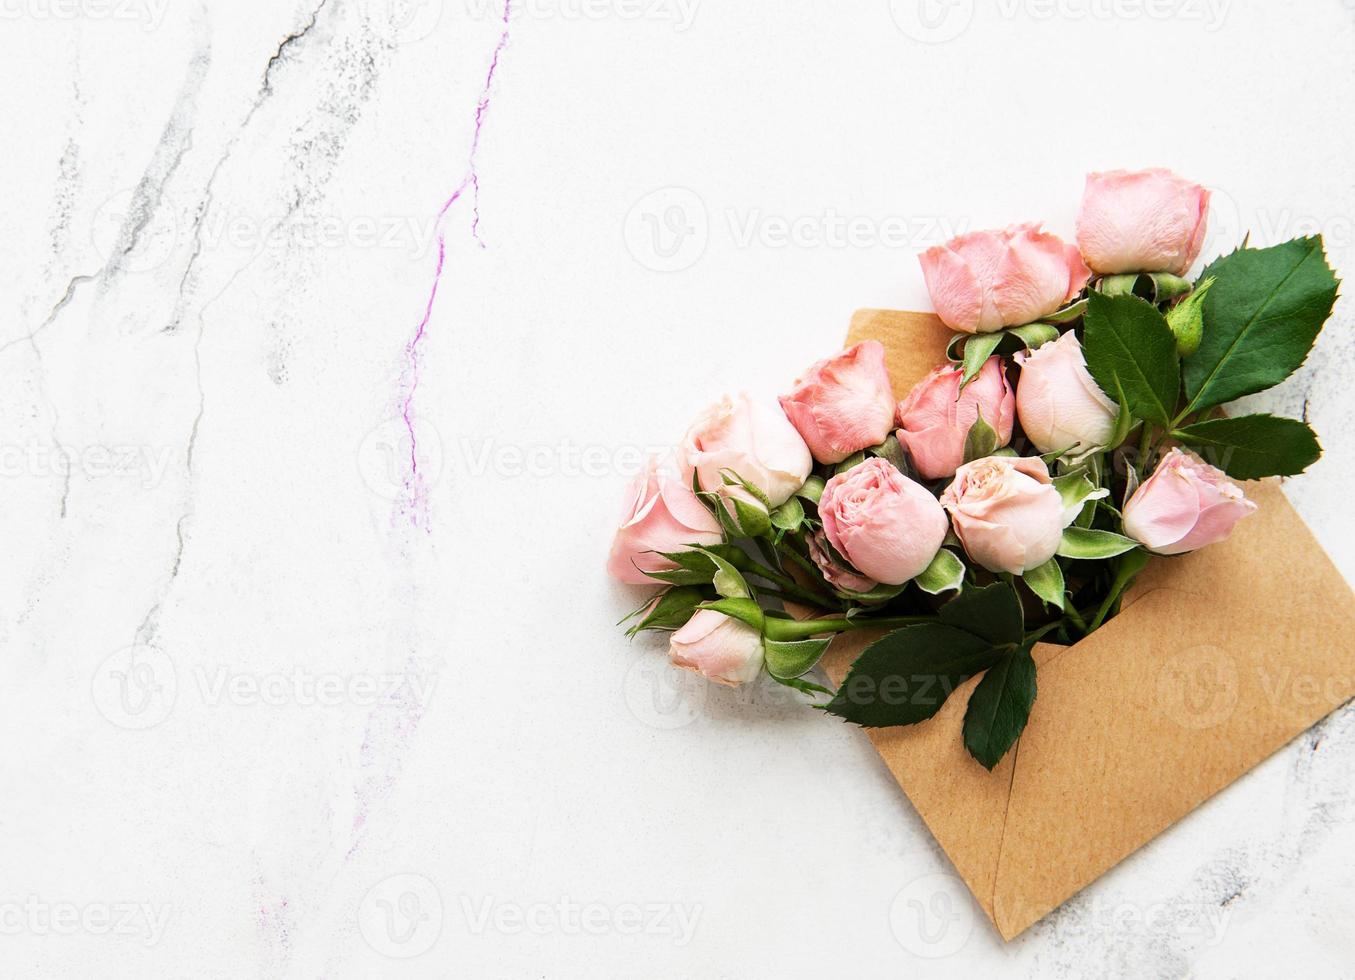 envelop en roze rozen foto